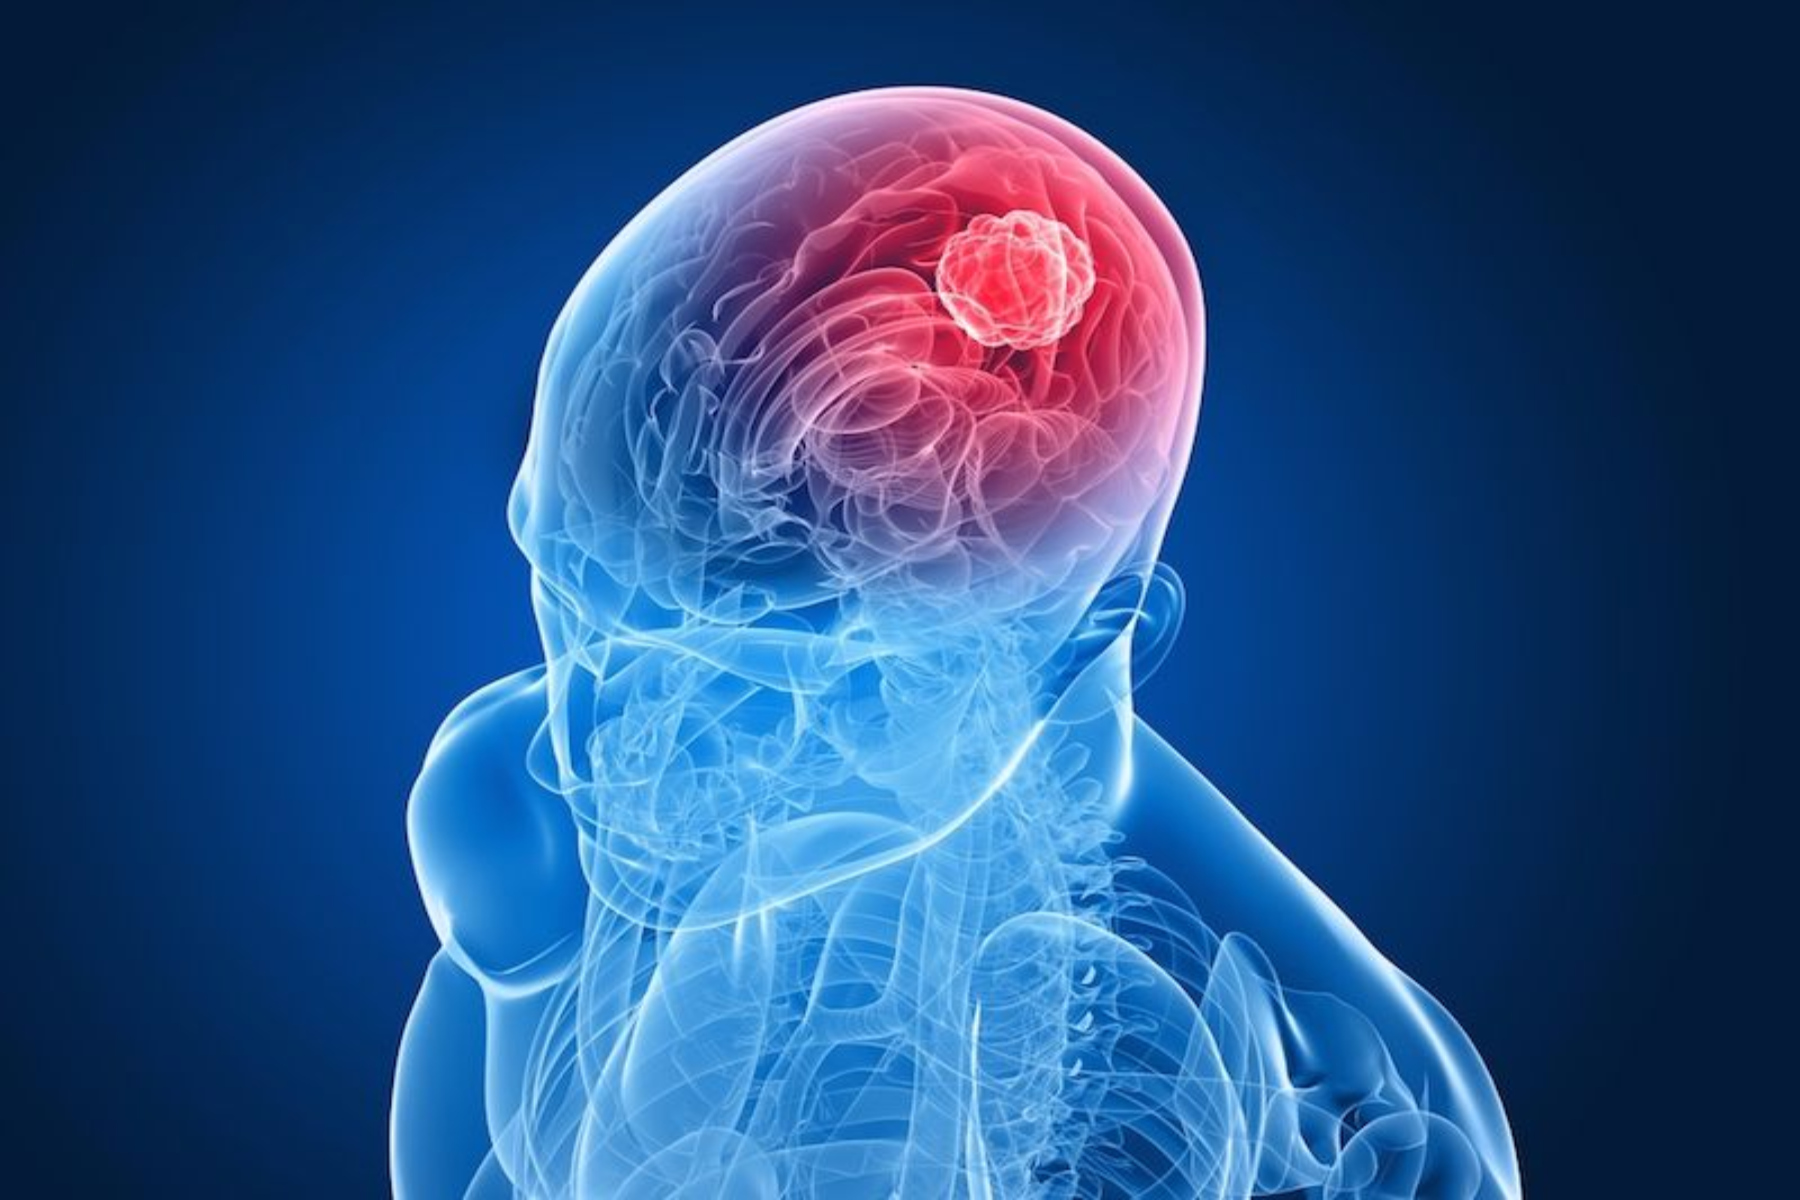 Καρκίνος εγκέφαλος: Τι πρέπει να λαμβάνουν υπόψη οι ασθενείς με καρκίνο εγκεφάλου;